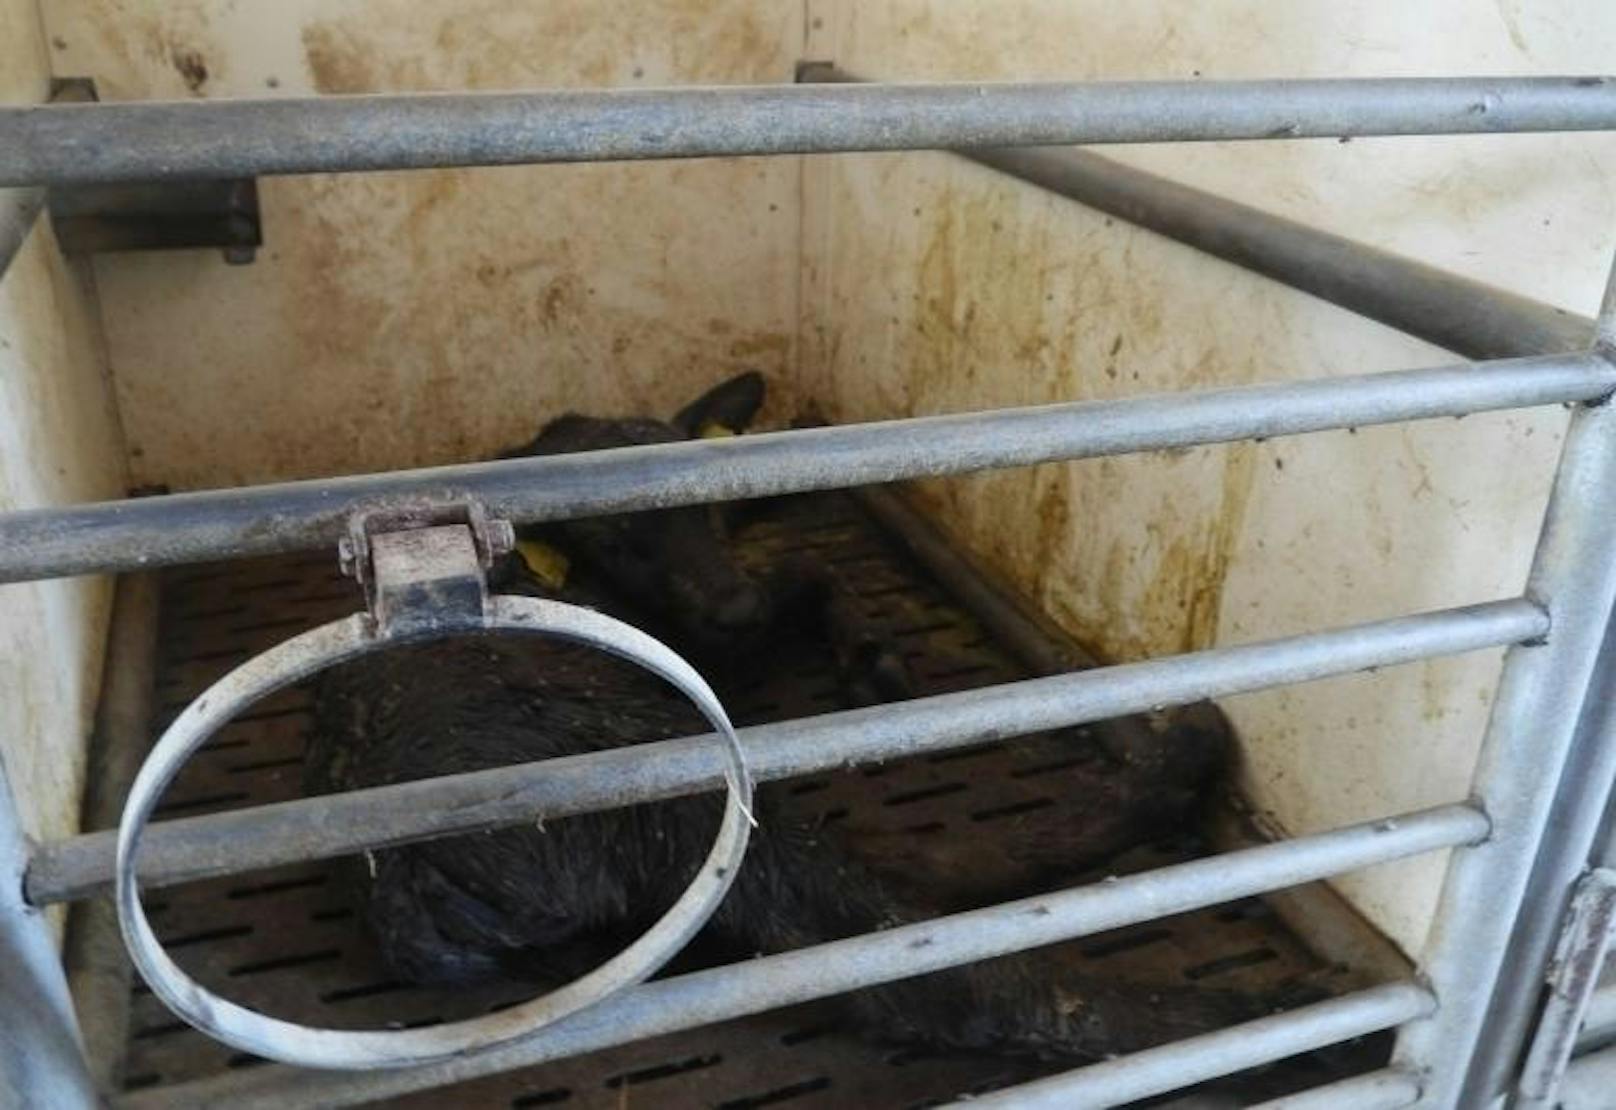 Die Tierschutzorganisation "Vier Pfoten" macht abermals auf die verheerenden Tierschutzmängel auf vielen Büffelfarmen in Italien aufmerksam